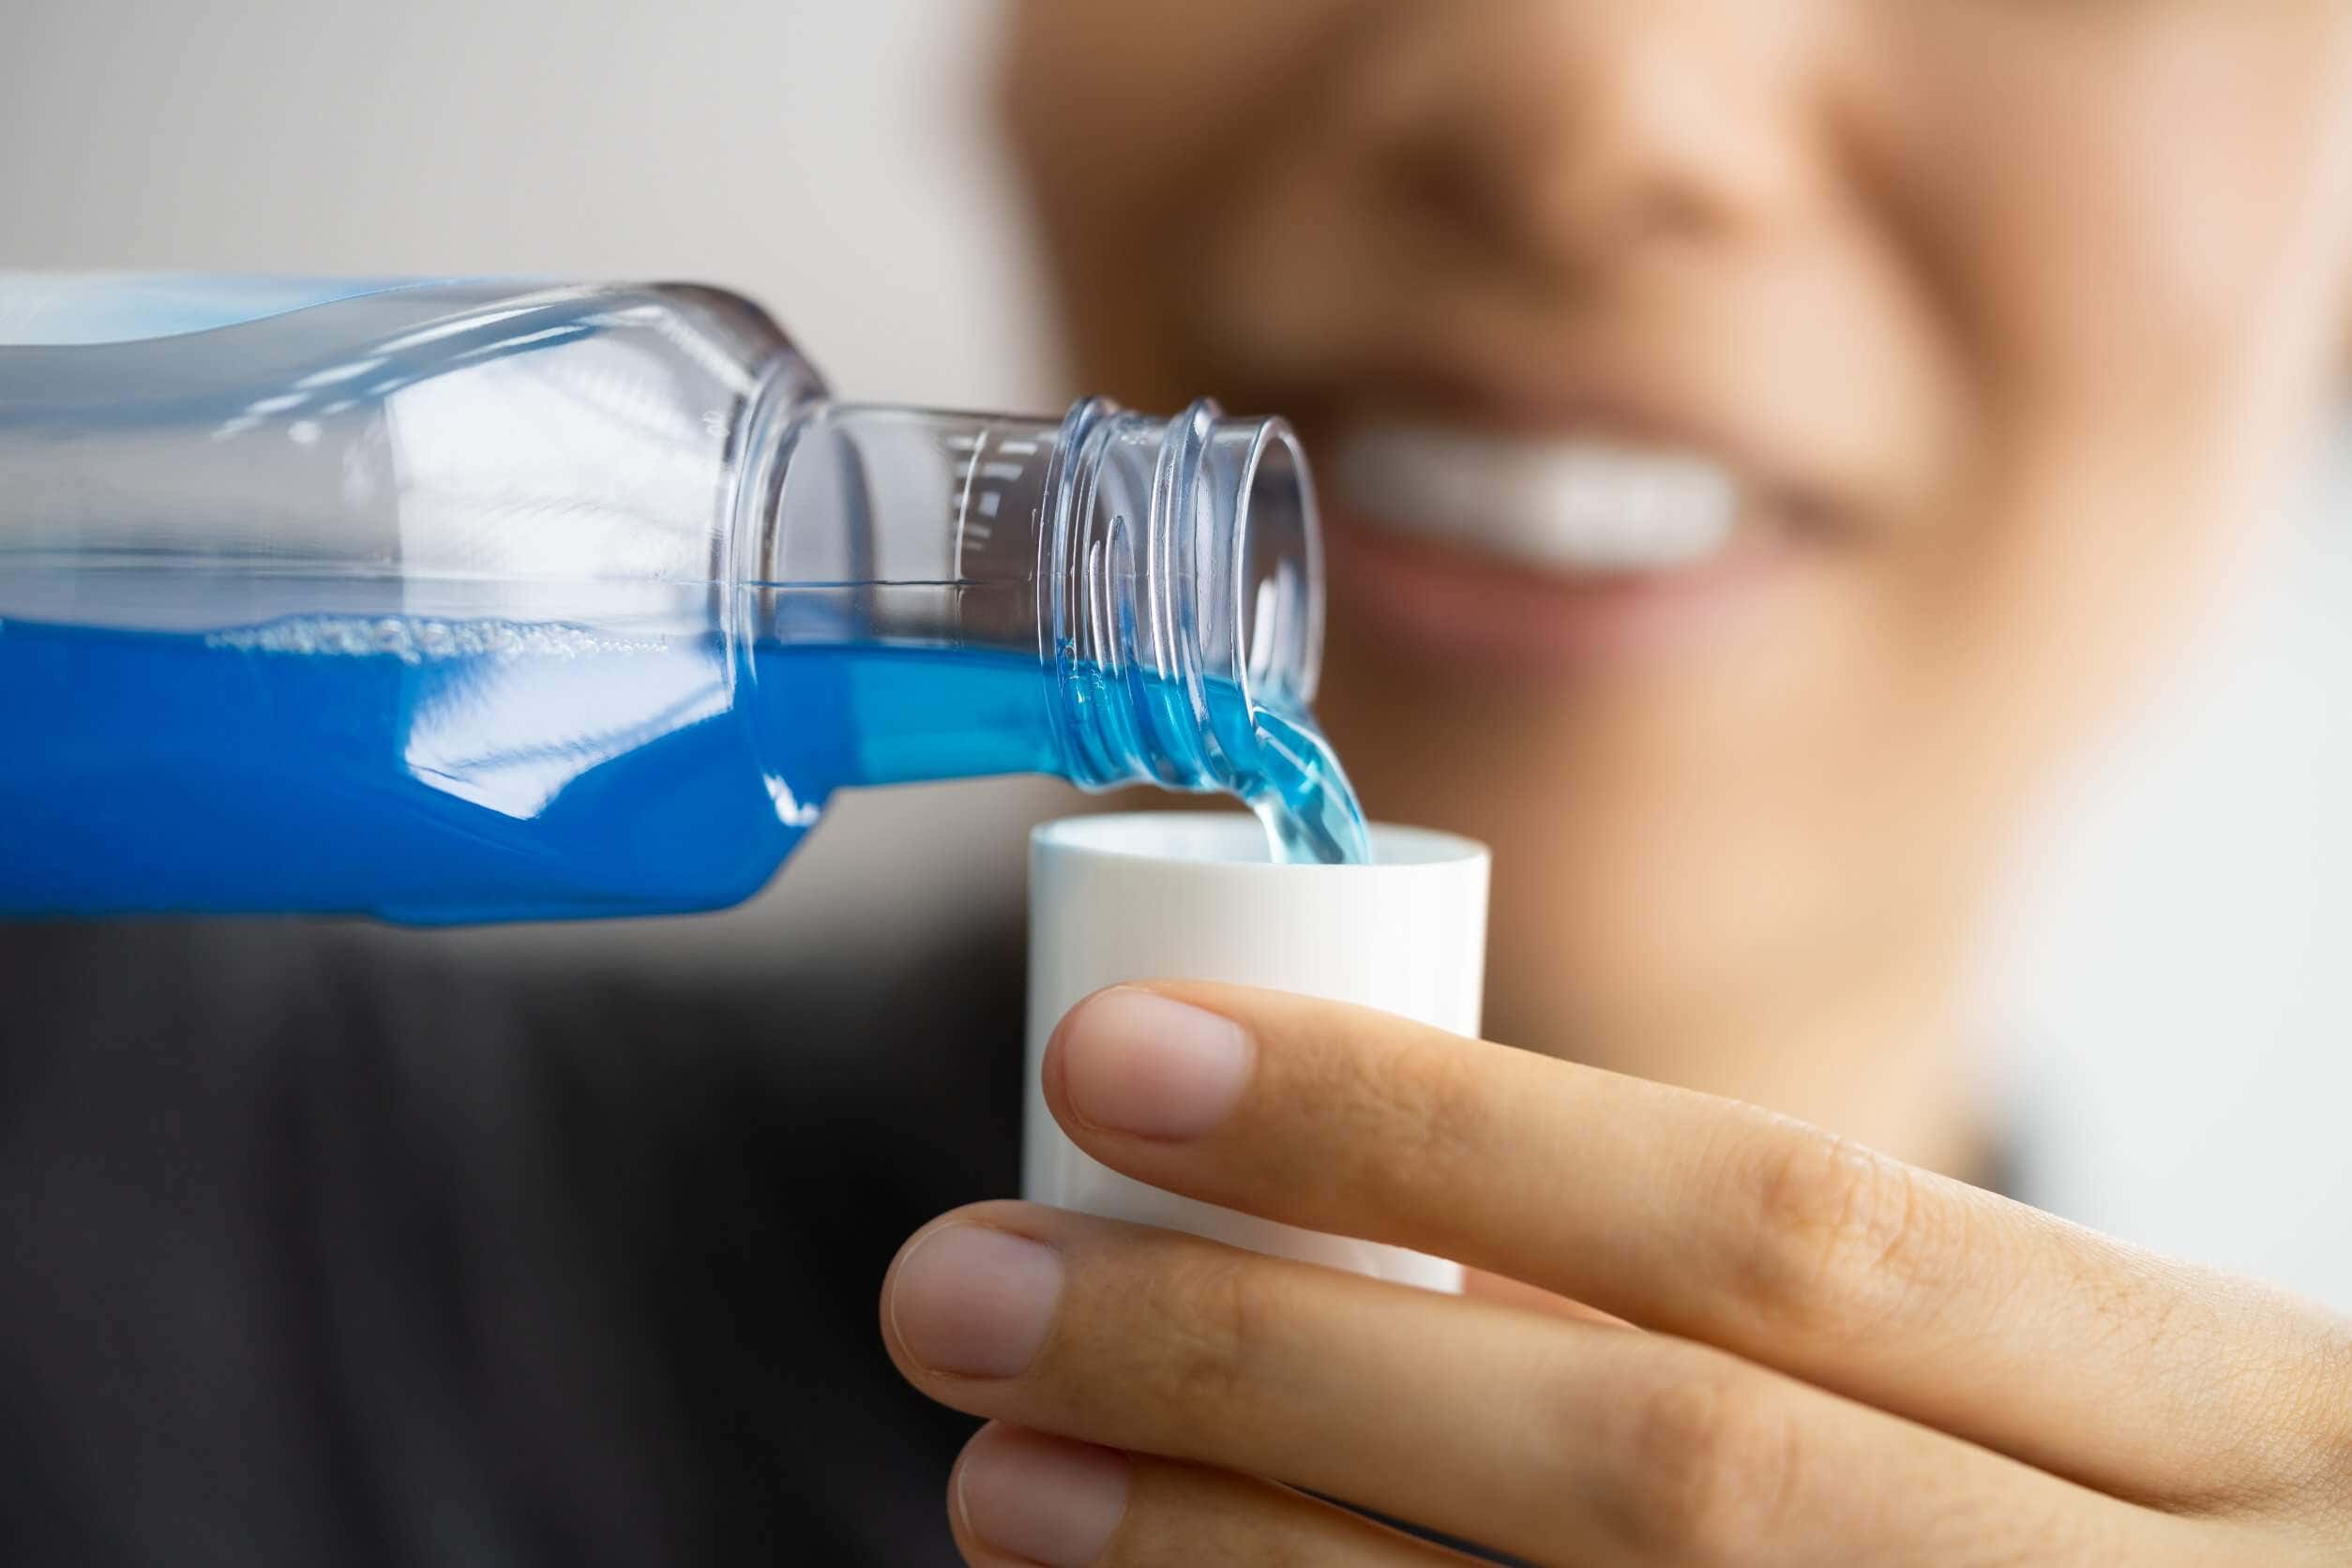 Bain de bouche pour nettoyer la brosse à dents électrique.